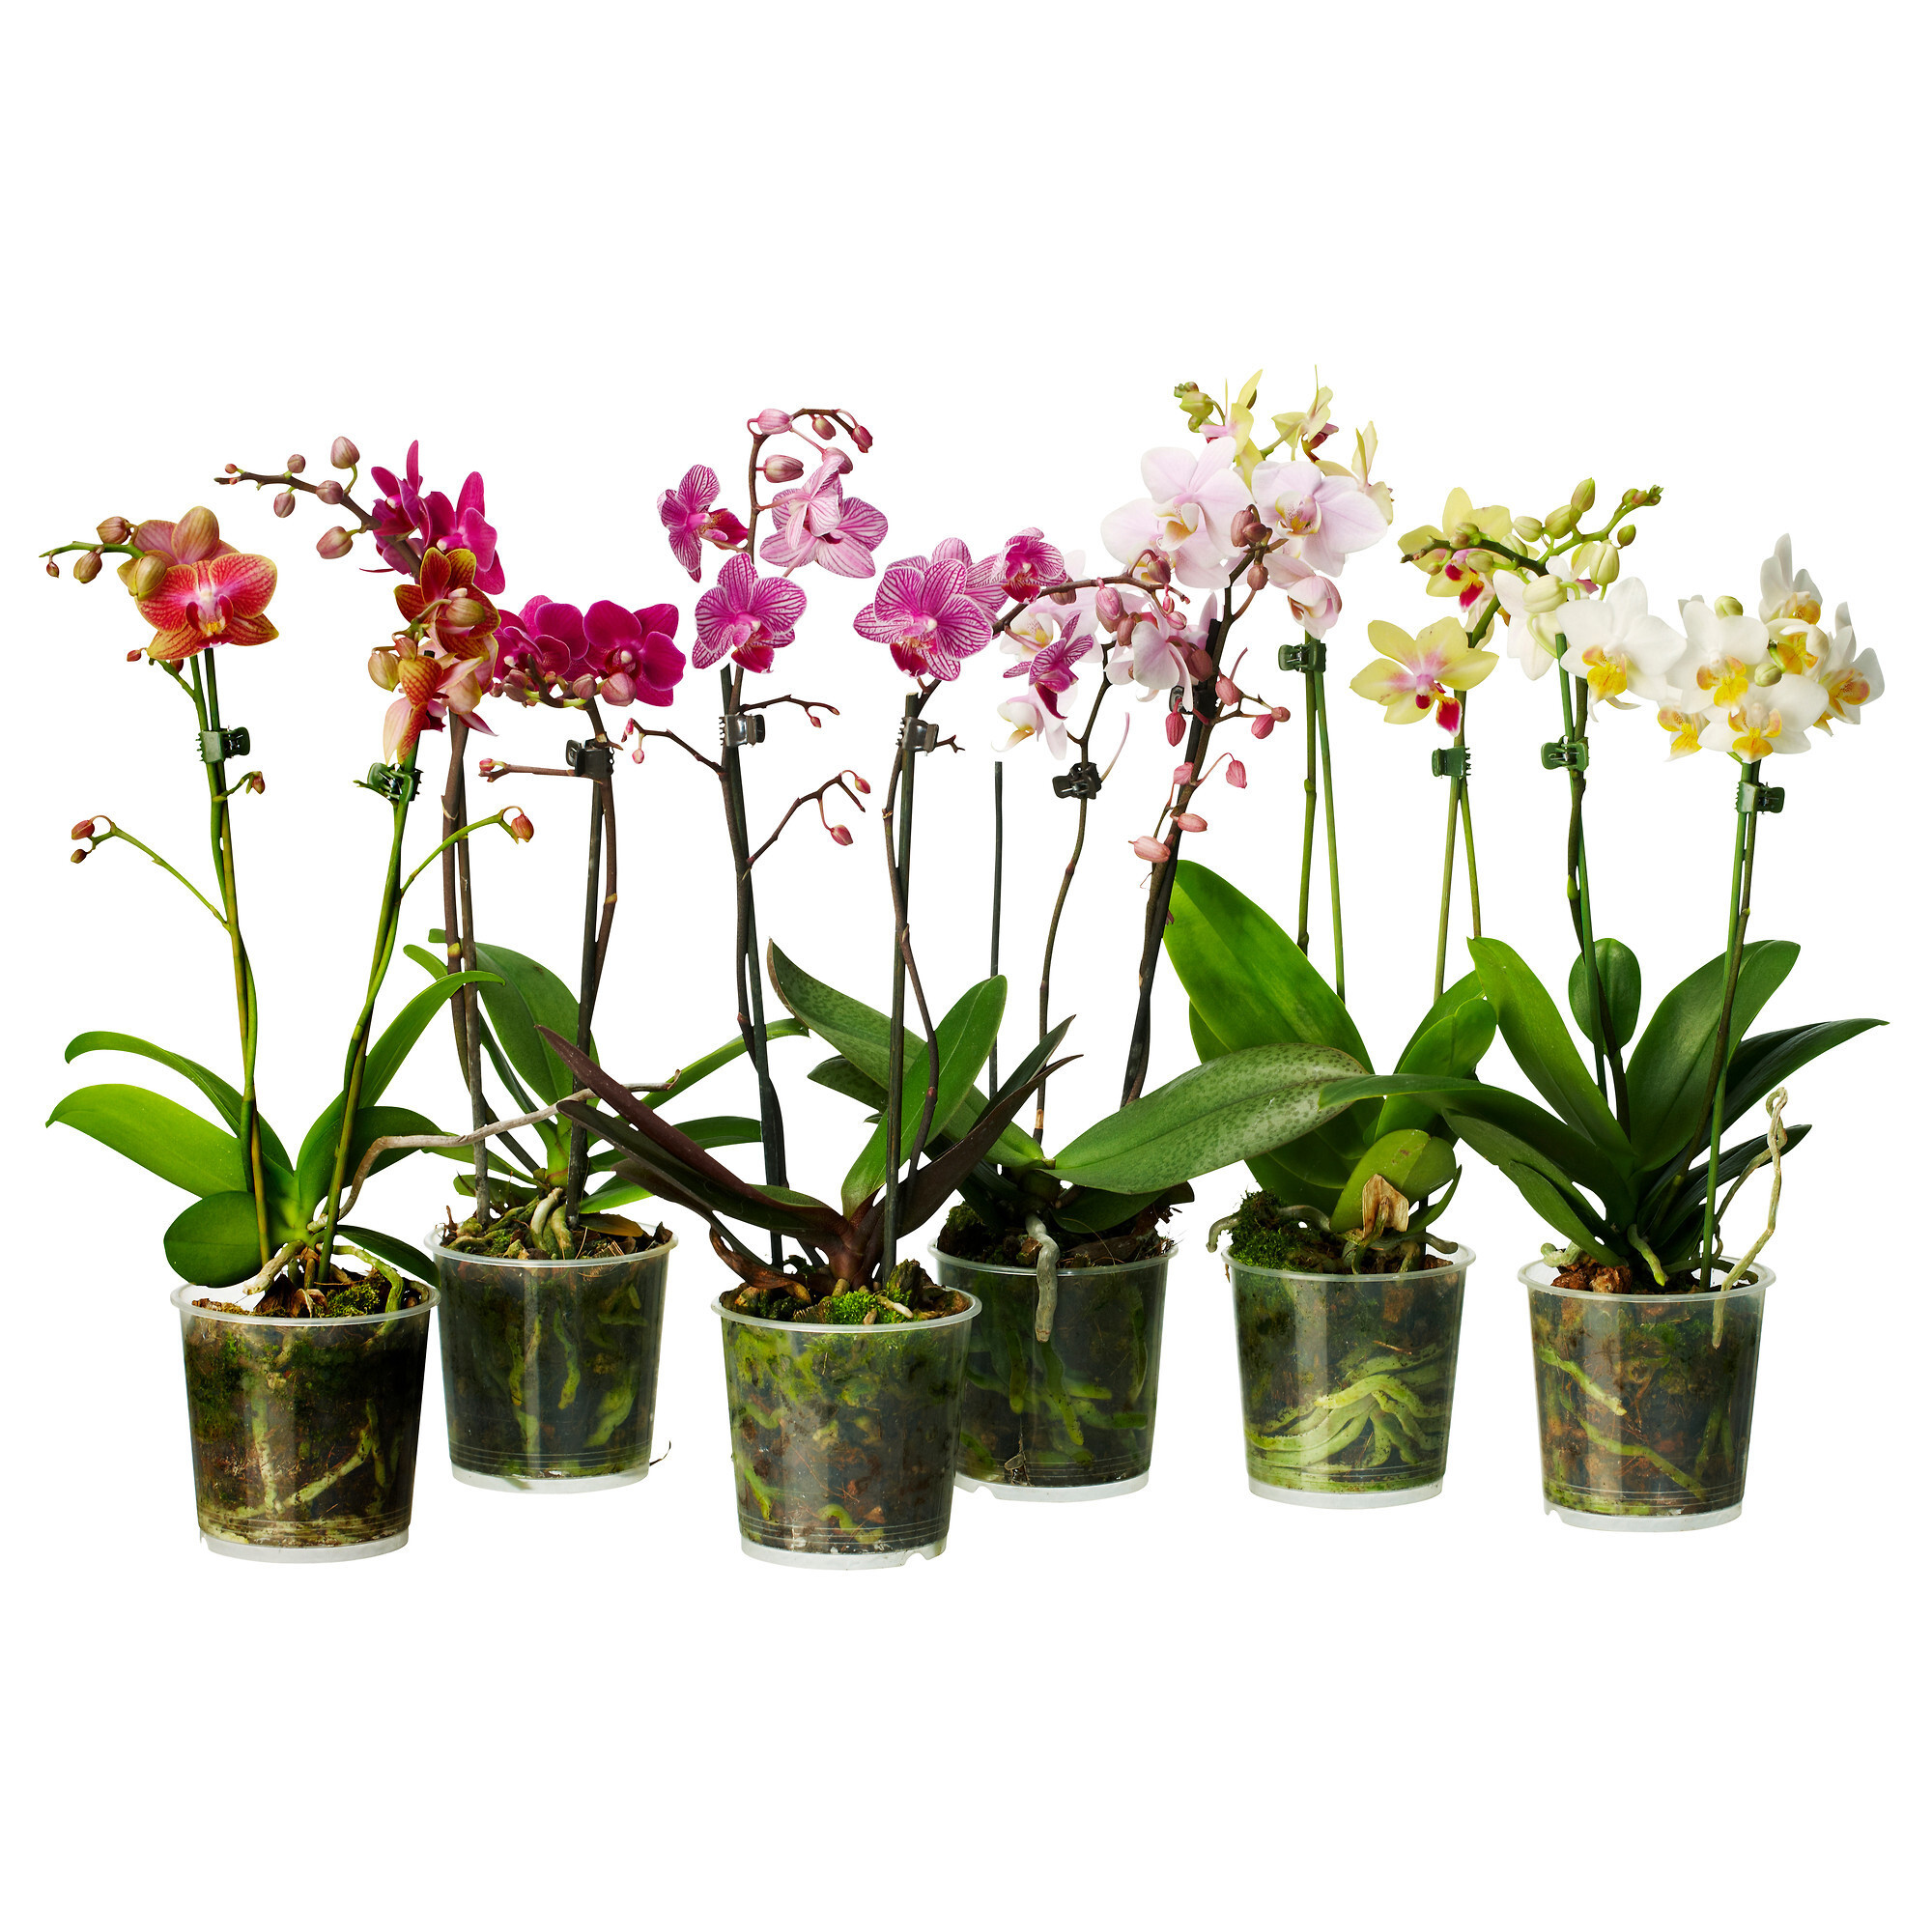 Купить орхидею в саратове. Орхидея микс d12 h60. Фаленопсис микс d12 h40. Орхидея фаленопсис микс. Цветы фаленопсис микс.